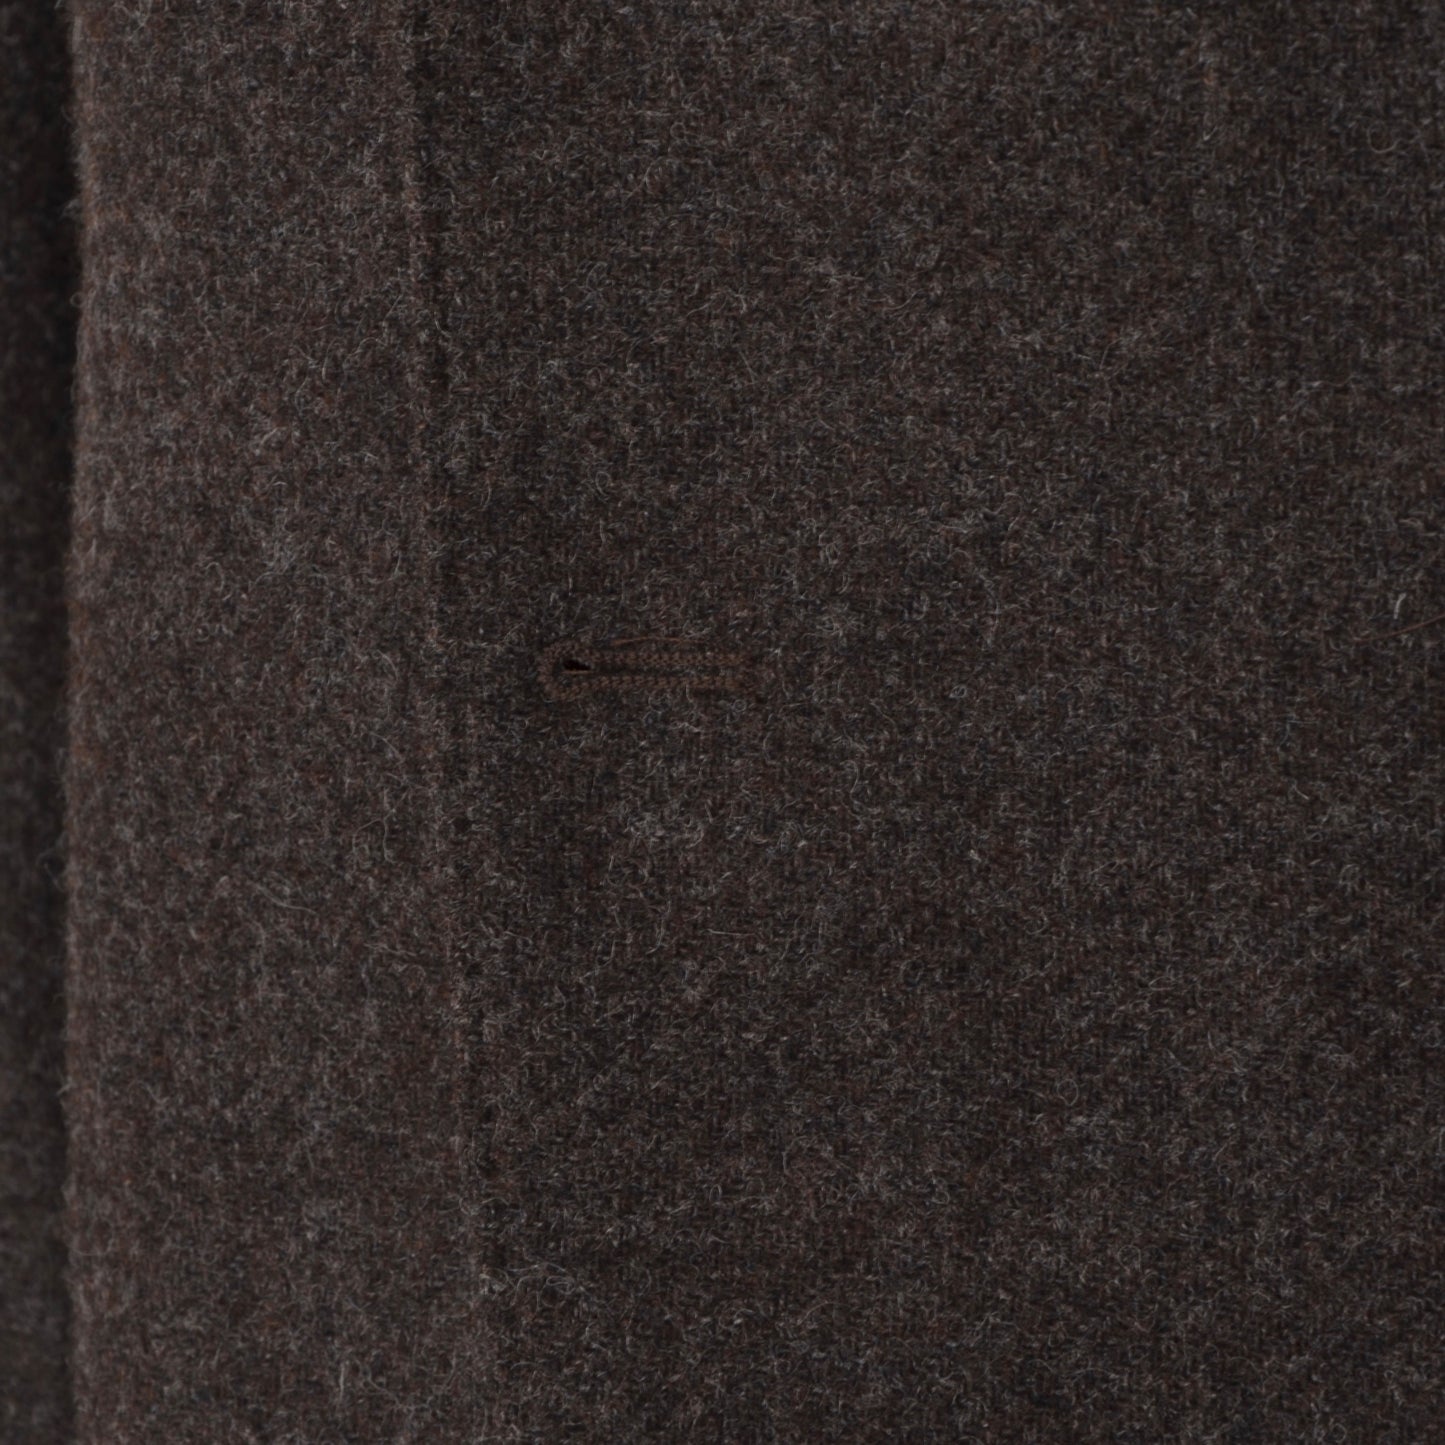 Dietmar Haas Moon Tweed Jacket Size 52 - Brown